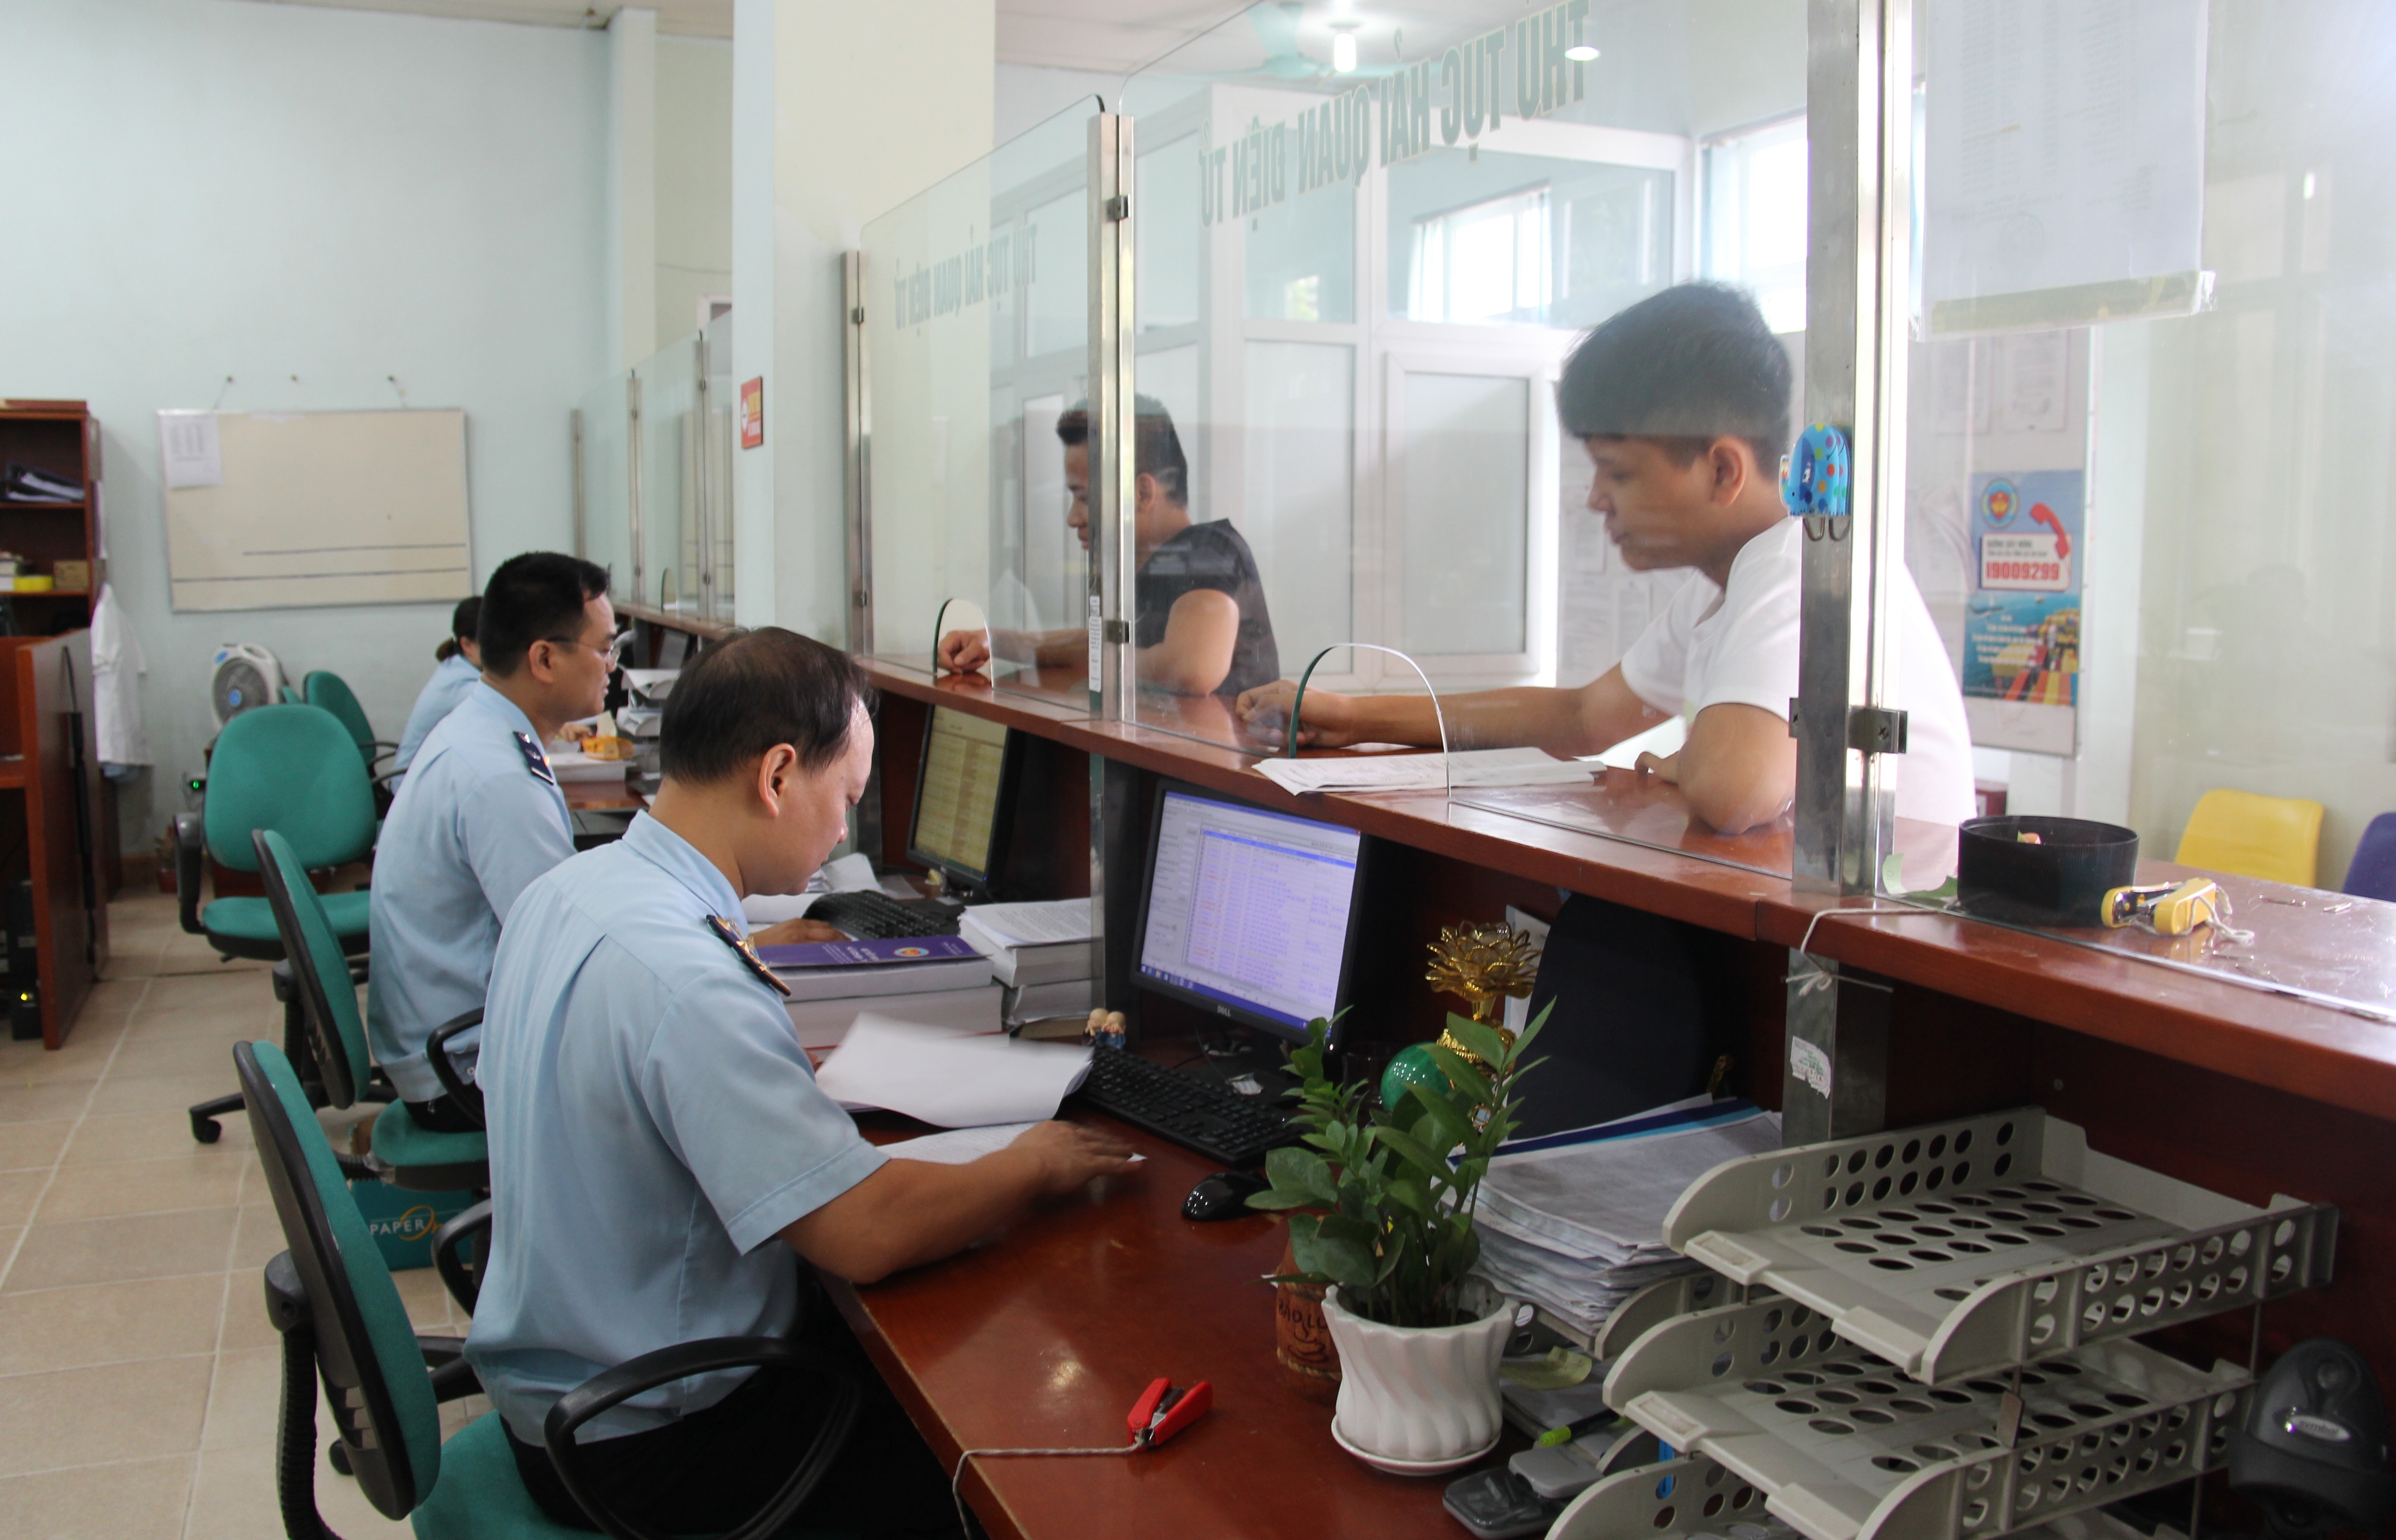 Hải quan Lạng Sơn: Thông báo tạm hoãn xuất nhập cảnh 161 trường hợp nợ thuế